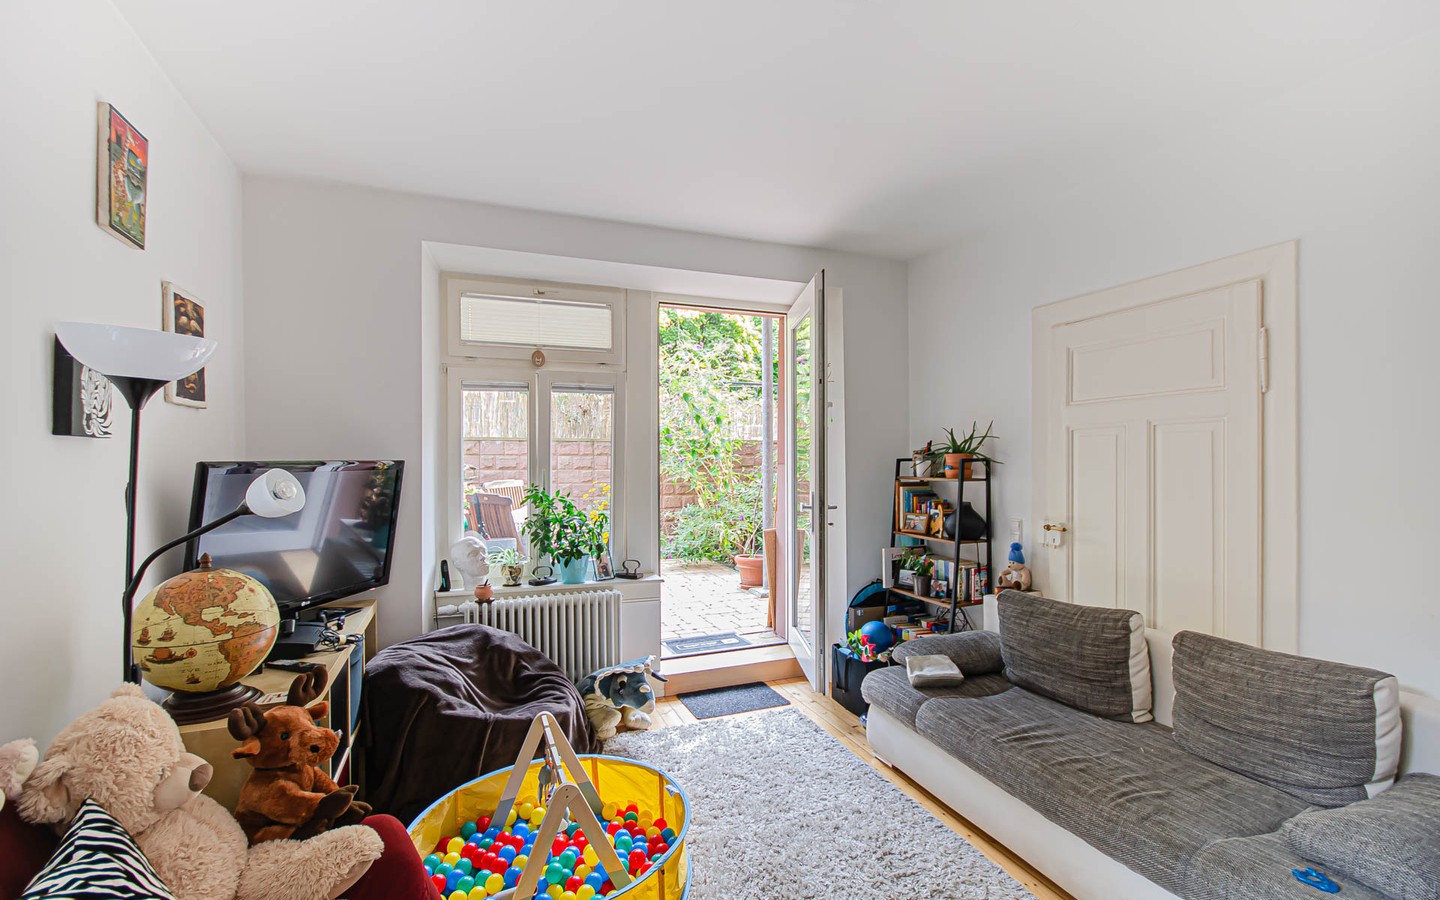 Wohnzimmer - Mittendrin und dennoch ruhig:
Sanierte Altbauwohnung mit Gartenanteil für Singles mit grünem Daumen